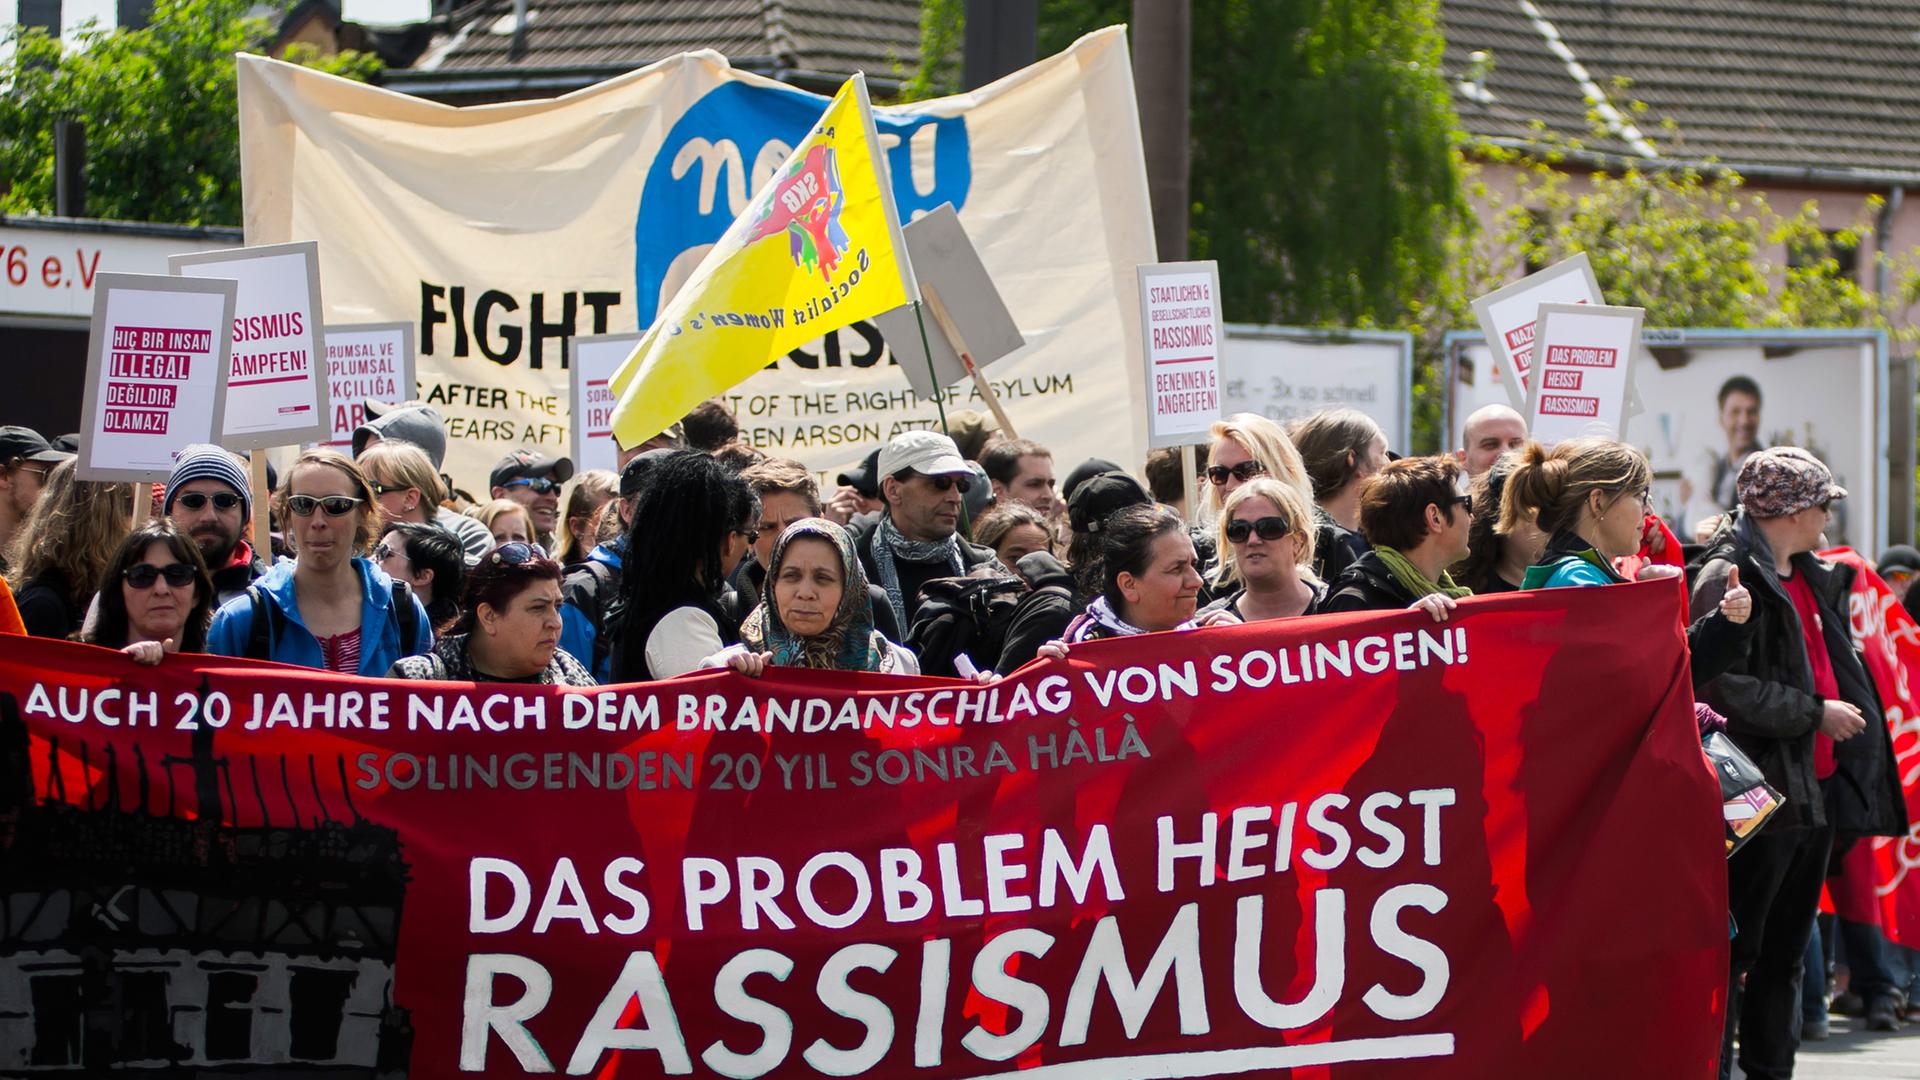 Eine Demo gegen Rassismus in Solingen am 25.05.2013